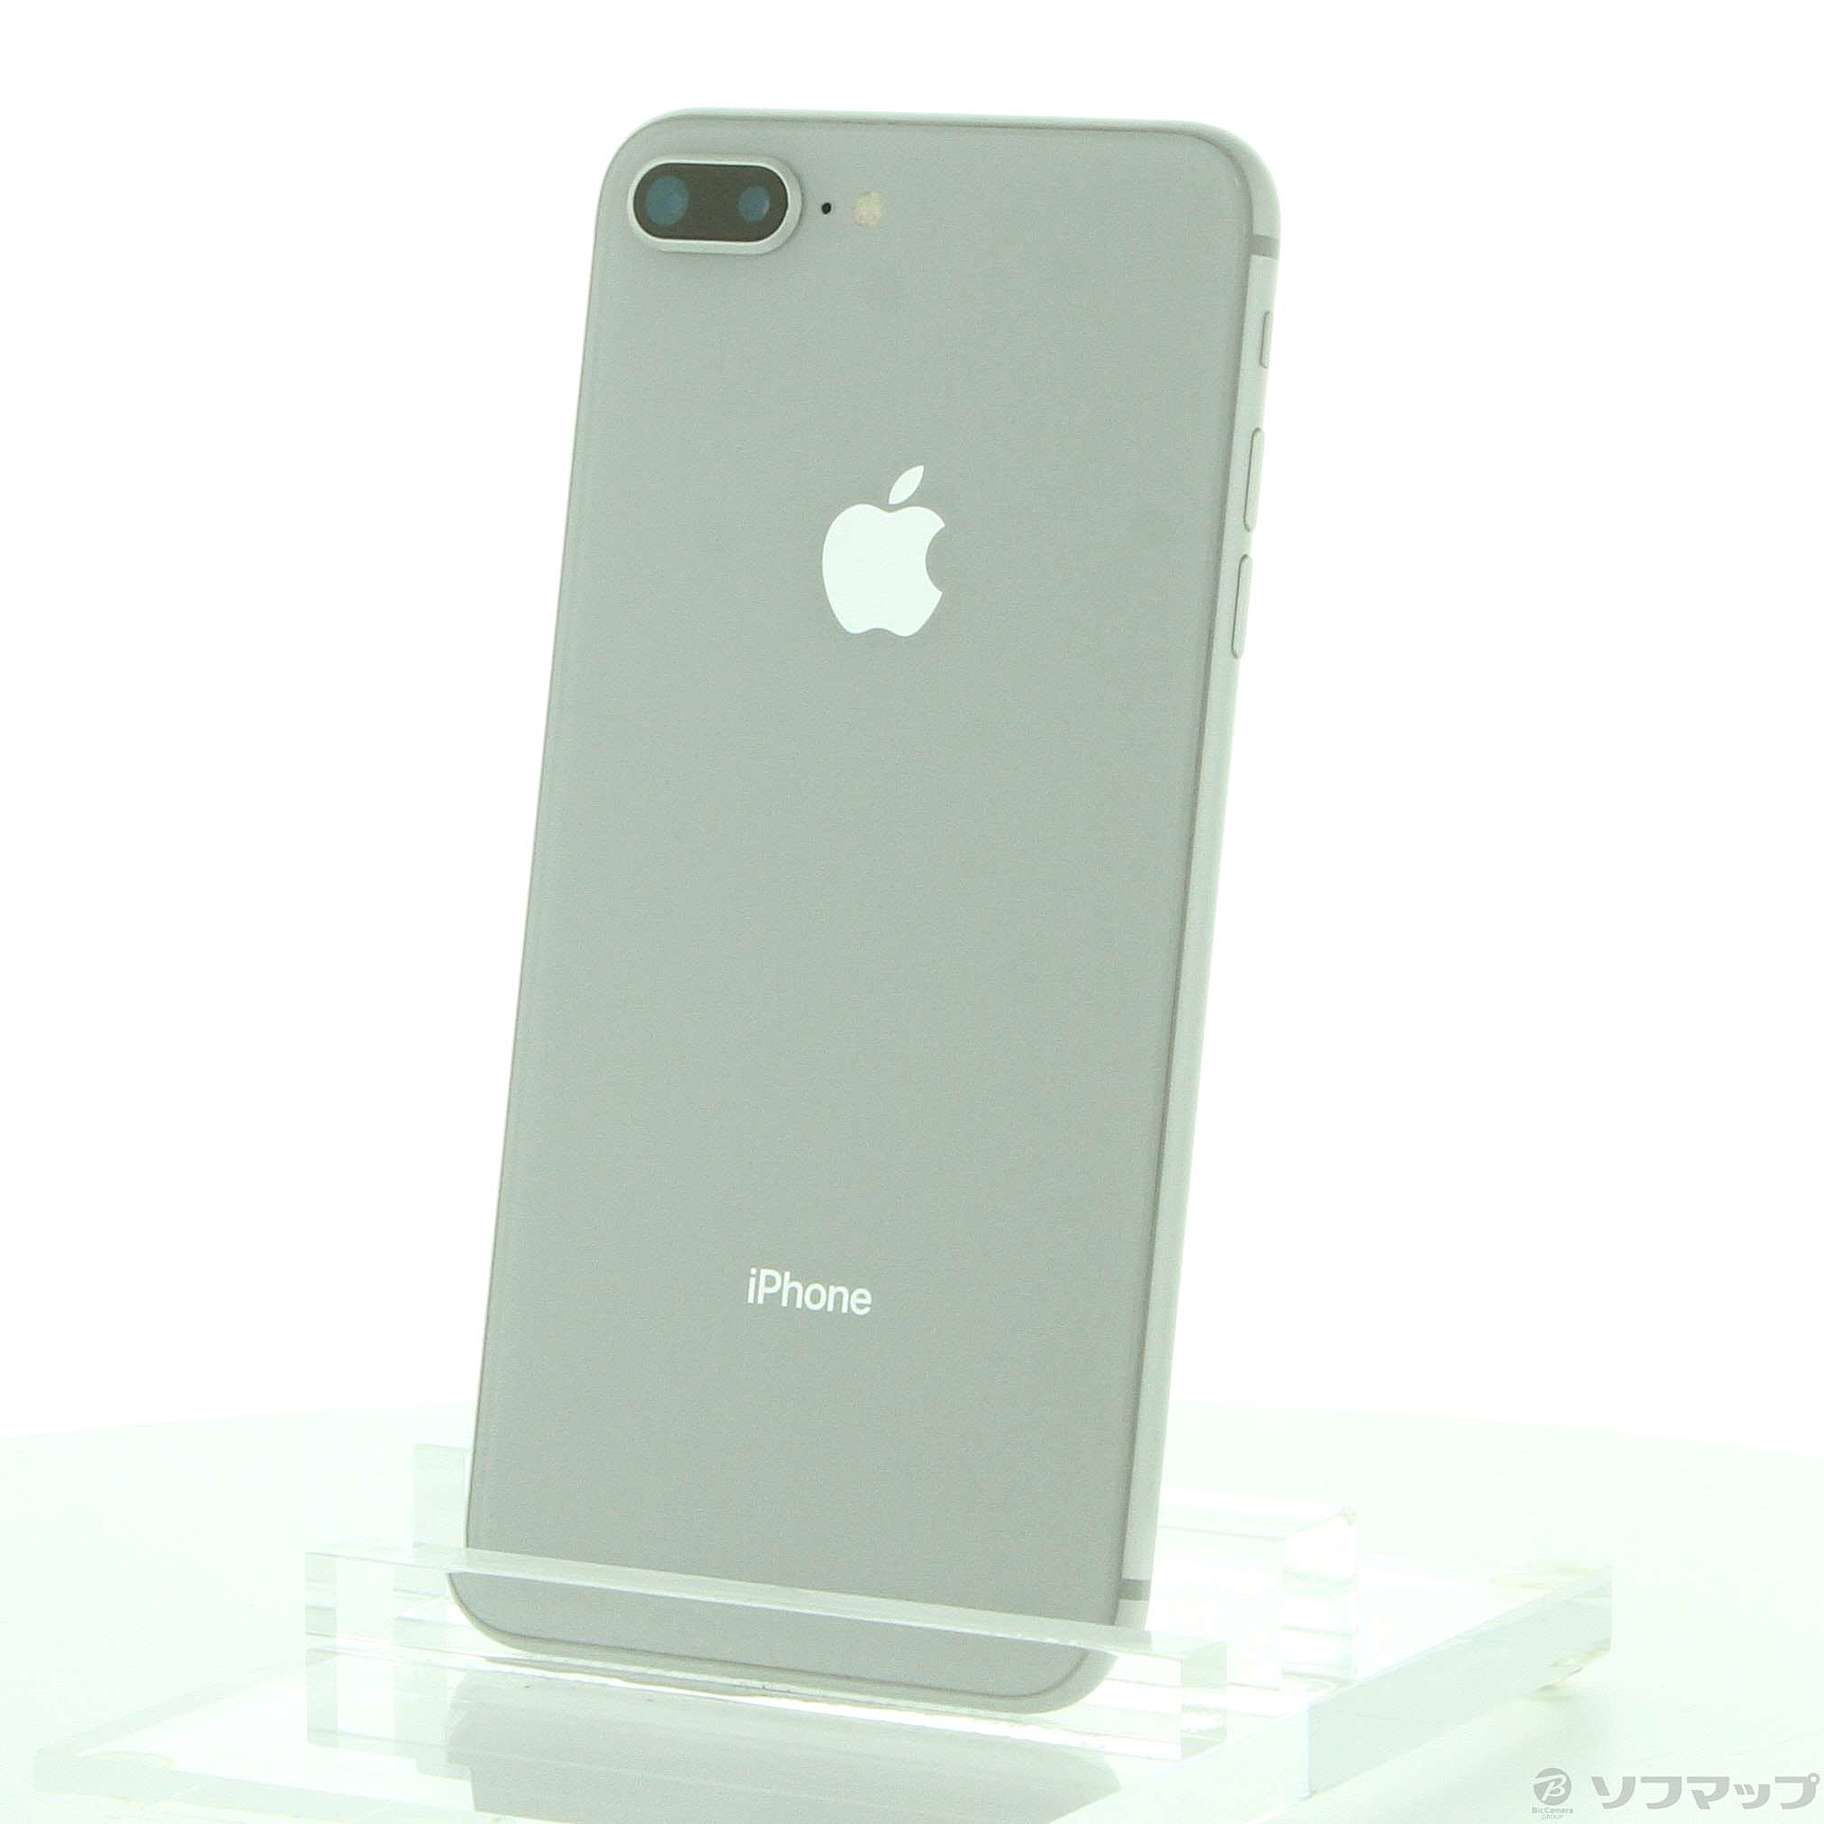 カラーSilveApple iPhone 8 Plus 64GB Silver SIMフリー